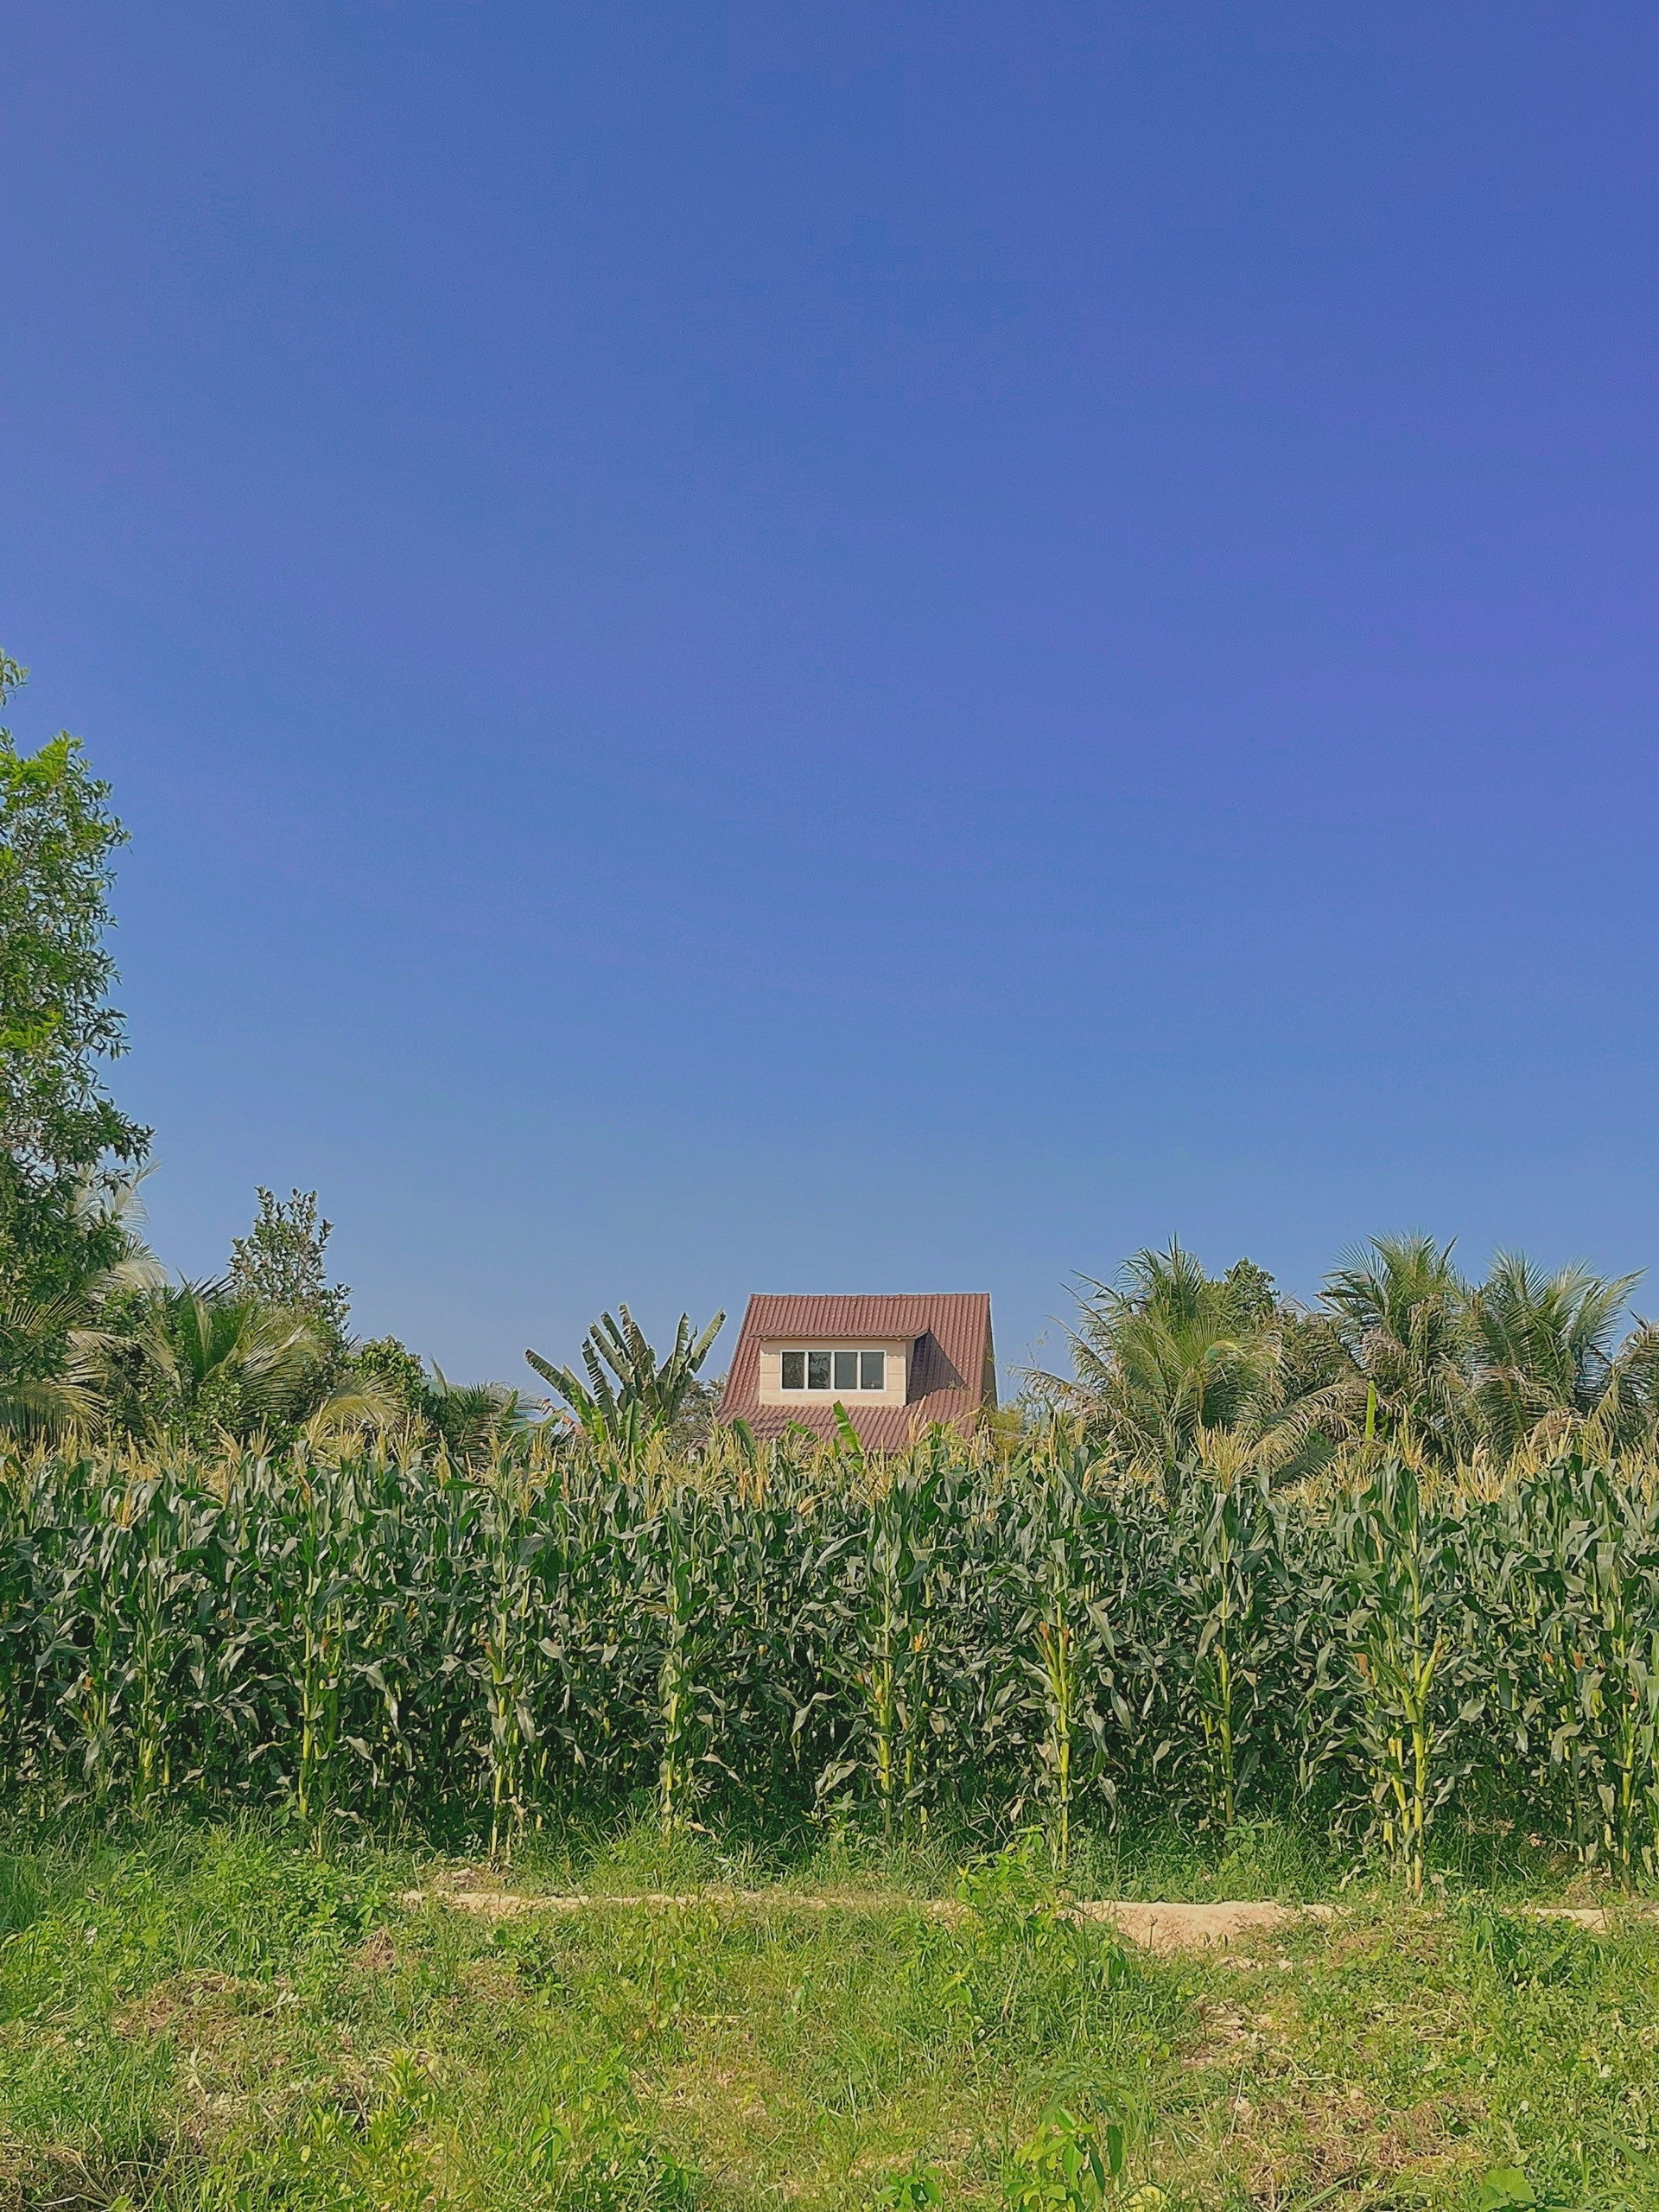 Nhà vườn đẹp như cổ tích ở Khánh Hòa, chi phí xây dựng 1,5 tỷ đồng - 2